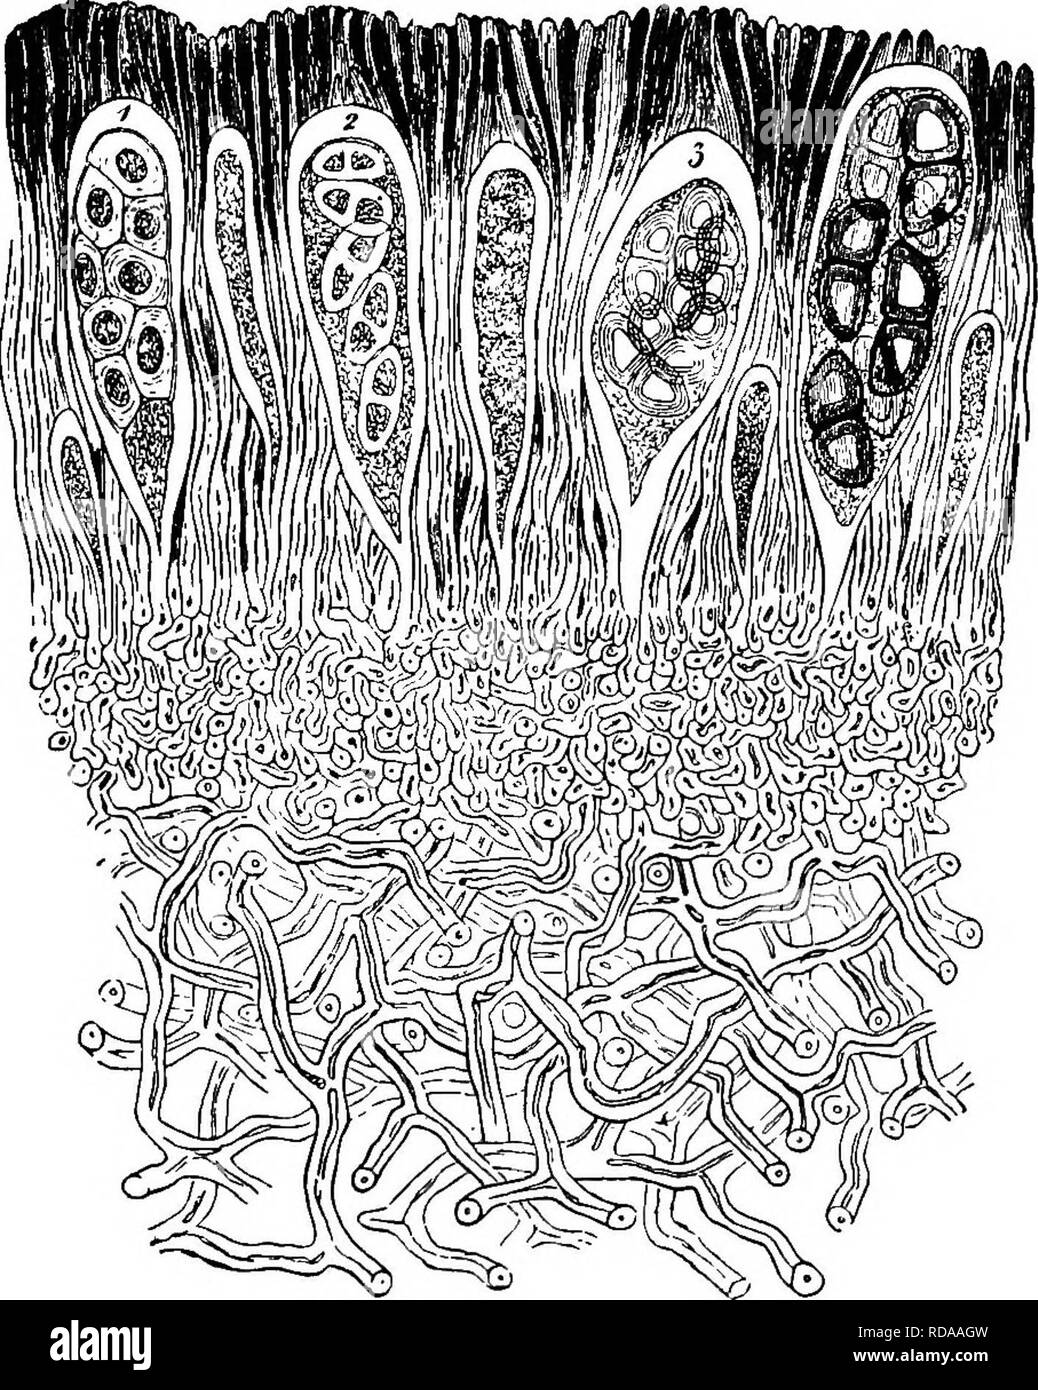 . Ein Lehrbuch der Botanik für die Sekundarstufe. Botanik. 162 ein Lehrbuch der Botanik wurde festgestellt, dass die Alge hchen - ganz unabhängig von der hchen - Pilz leben können. In der Tat, die verstrickt Algen oft als mit Formen unabhängig leben identisch sind, die in der Regel bestimmte blau-grün. Abb. 158,- viel vergrößerten Teil des Futter Schicht, aus der die Asci (1, -, 3, 4) Mit ihren enthaltenen Si&gt; Orks.-.^n ach Sachh. Algen und einige der einfacheren grün Algro. Auf der anderen Seite, es wurde festgestellt, dass die Flechten - Pilz ist komplett abhängig von der Algse; für die Ge Stockfoto